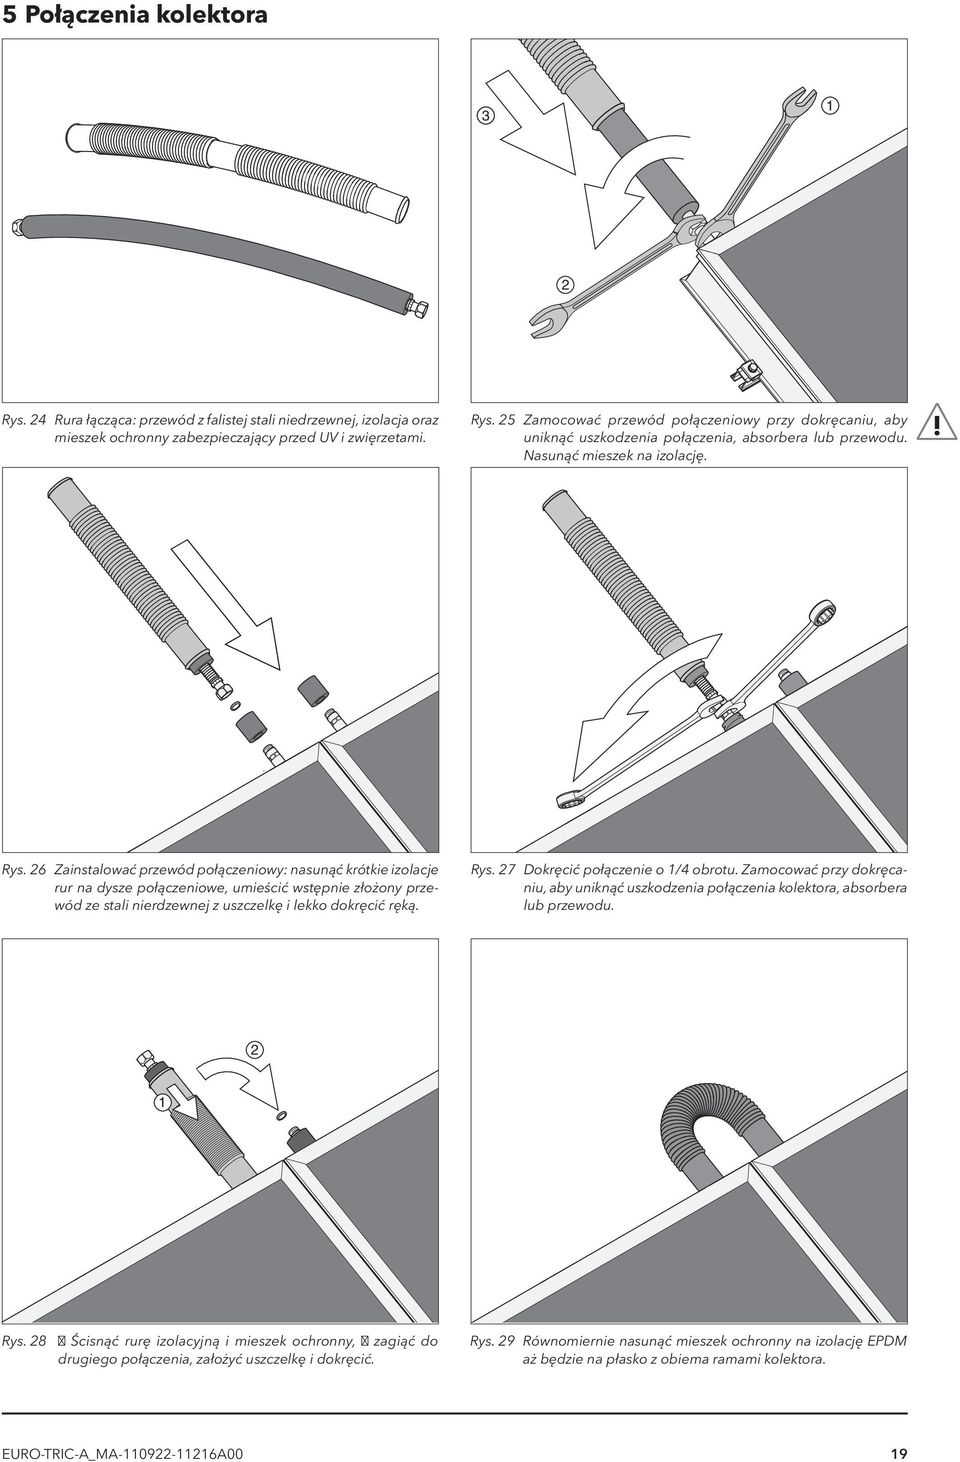 6 Zainstalować przewód połączeniowy: nasunąć krótkie izolacje rur na dysze połączeniowe, umieścić wstępnie złożony przewód ze stali nierdzewnej z uszczelkę i lekko dokręcić ręką. Rys.